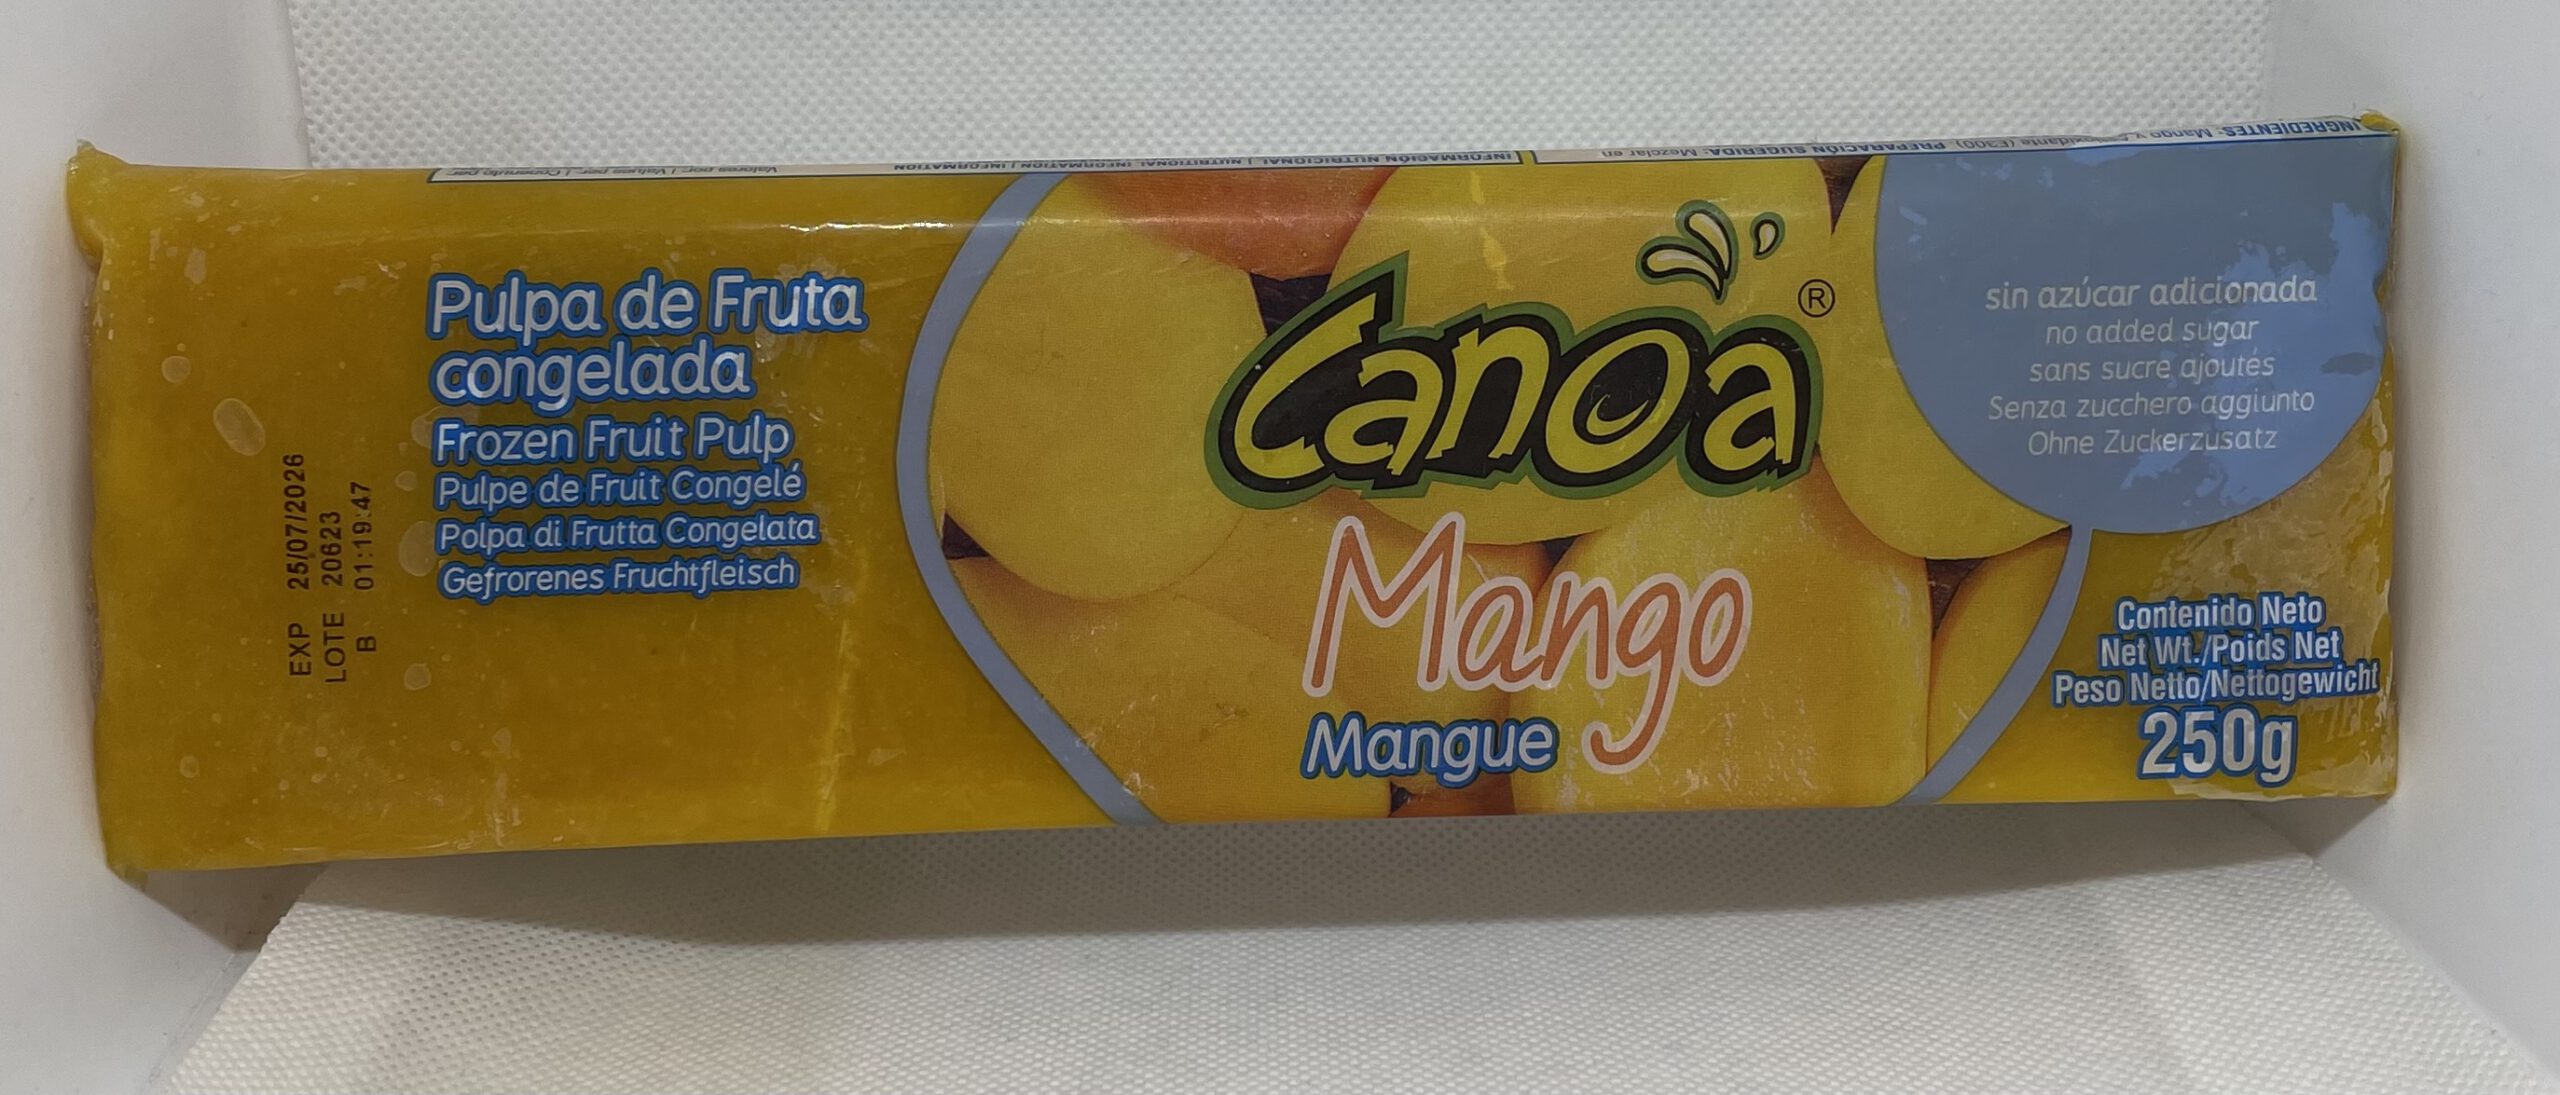 Pulpa de Mango Canoa 250g (TK-Ware)